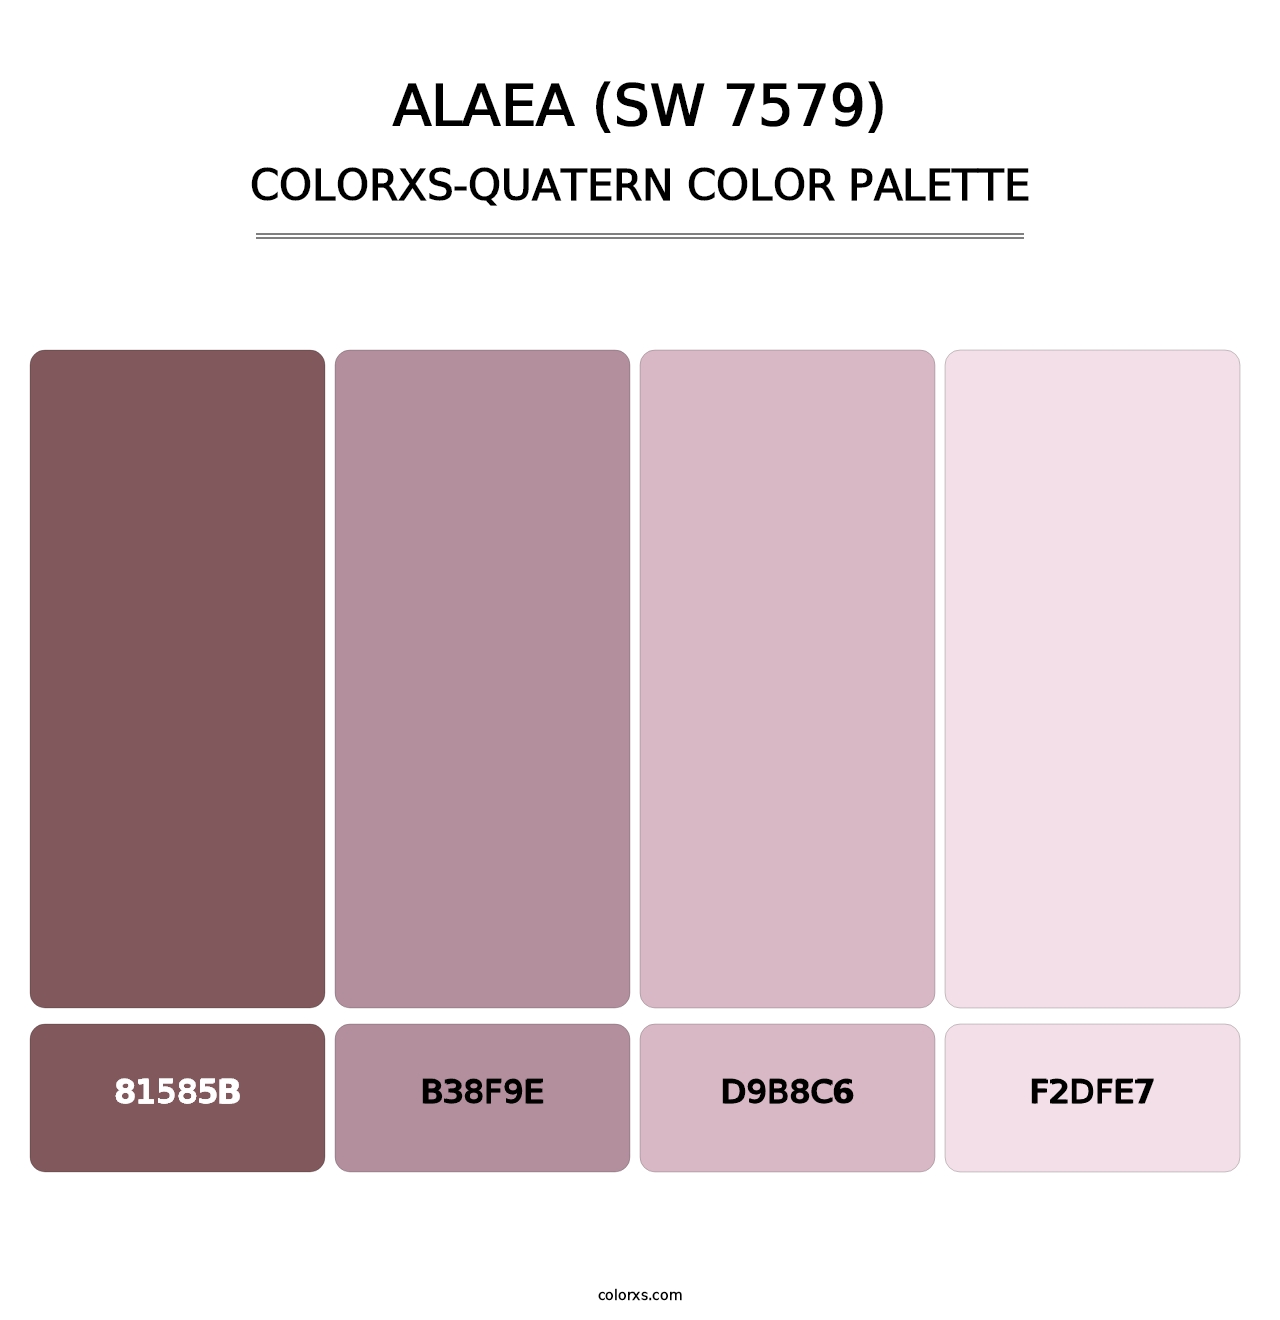 Alaea (SW 7579) - Colorxs Quatern Palette